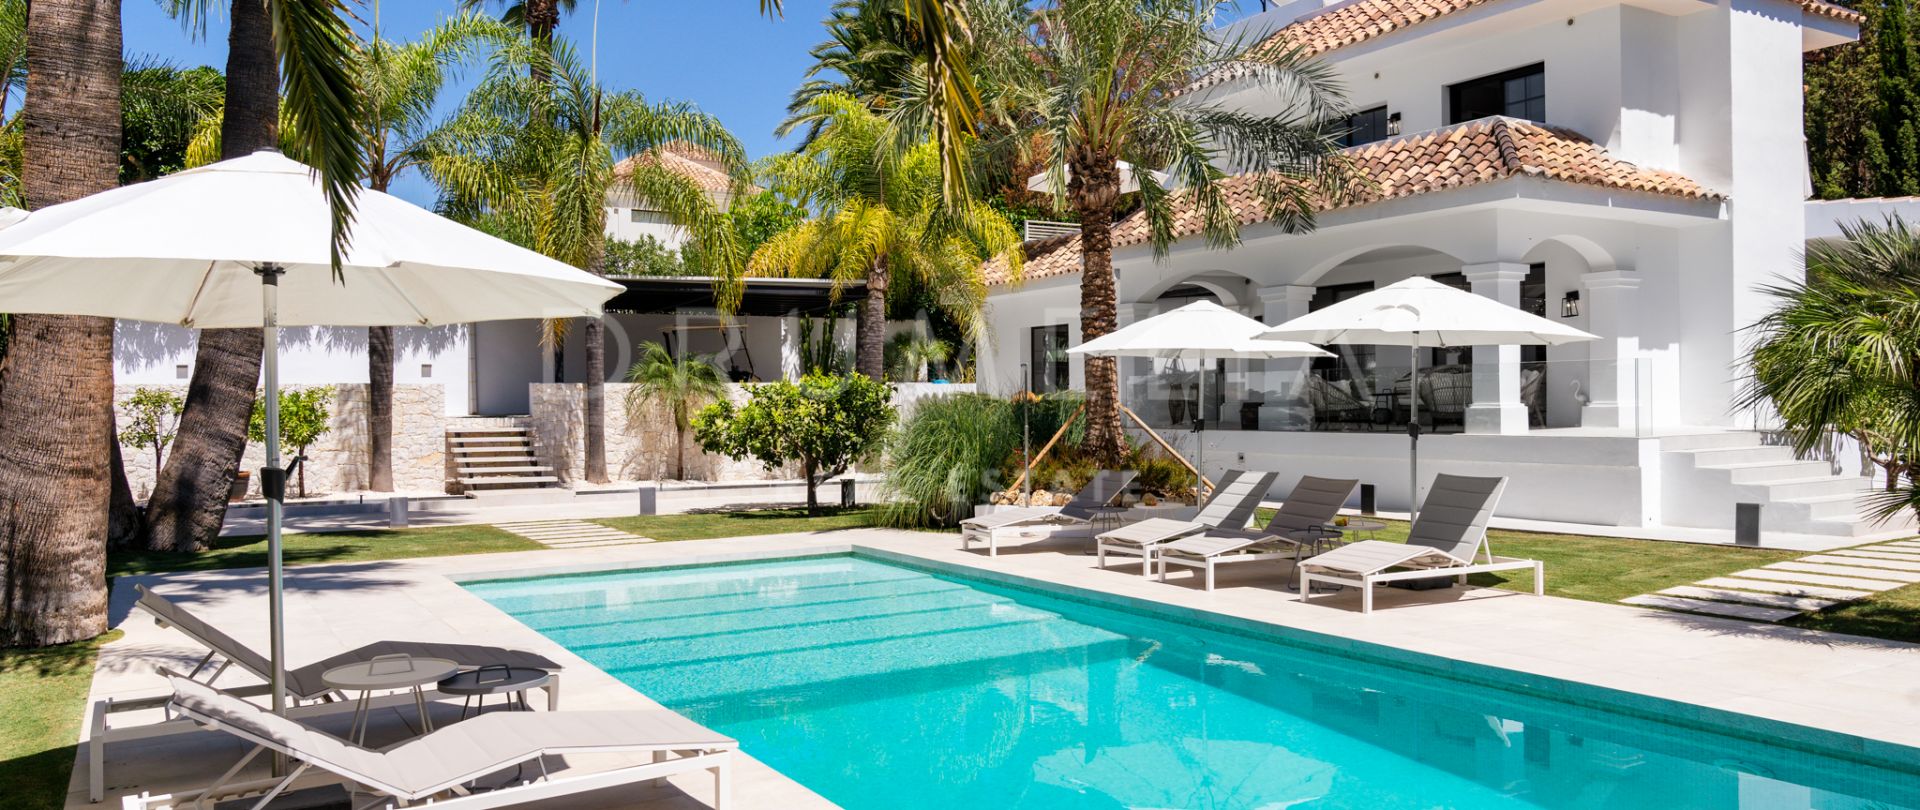 Pięknie odnowiona luksusowa willa w pobliżu klubu golfowego Los Naranjos w Nowej Andaluzji, Marbella.